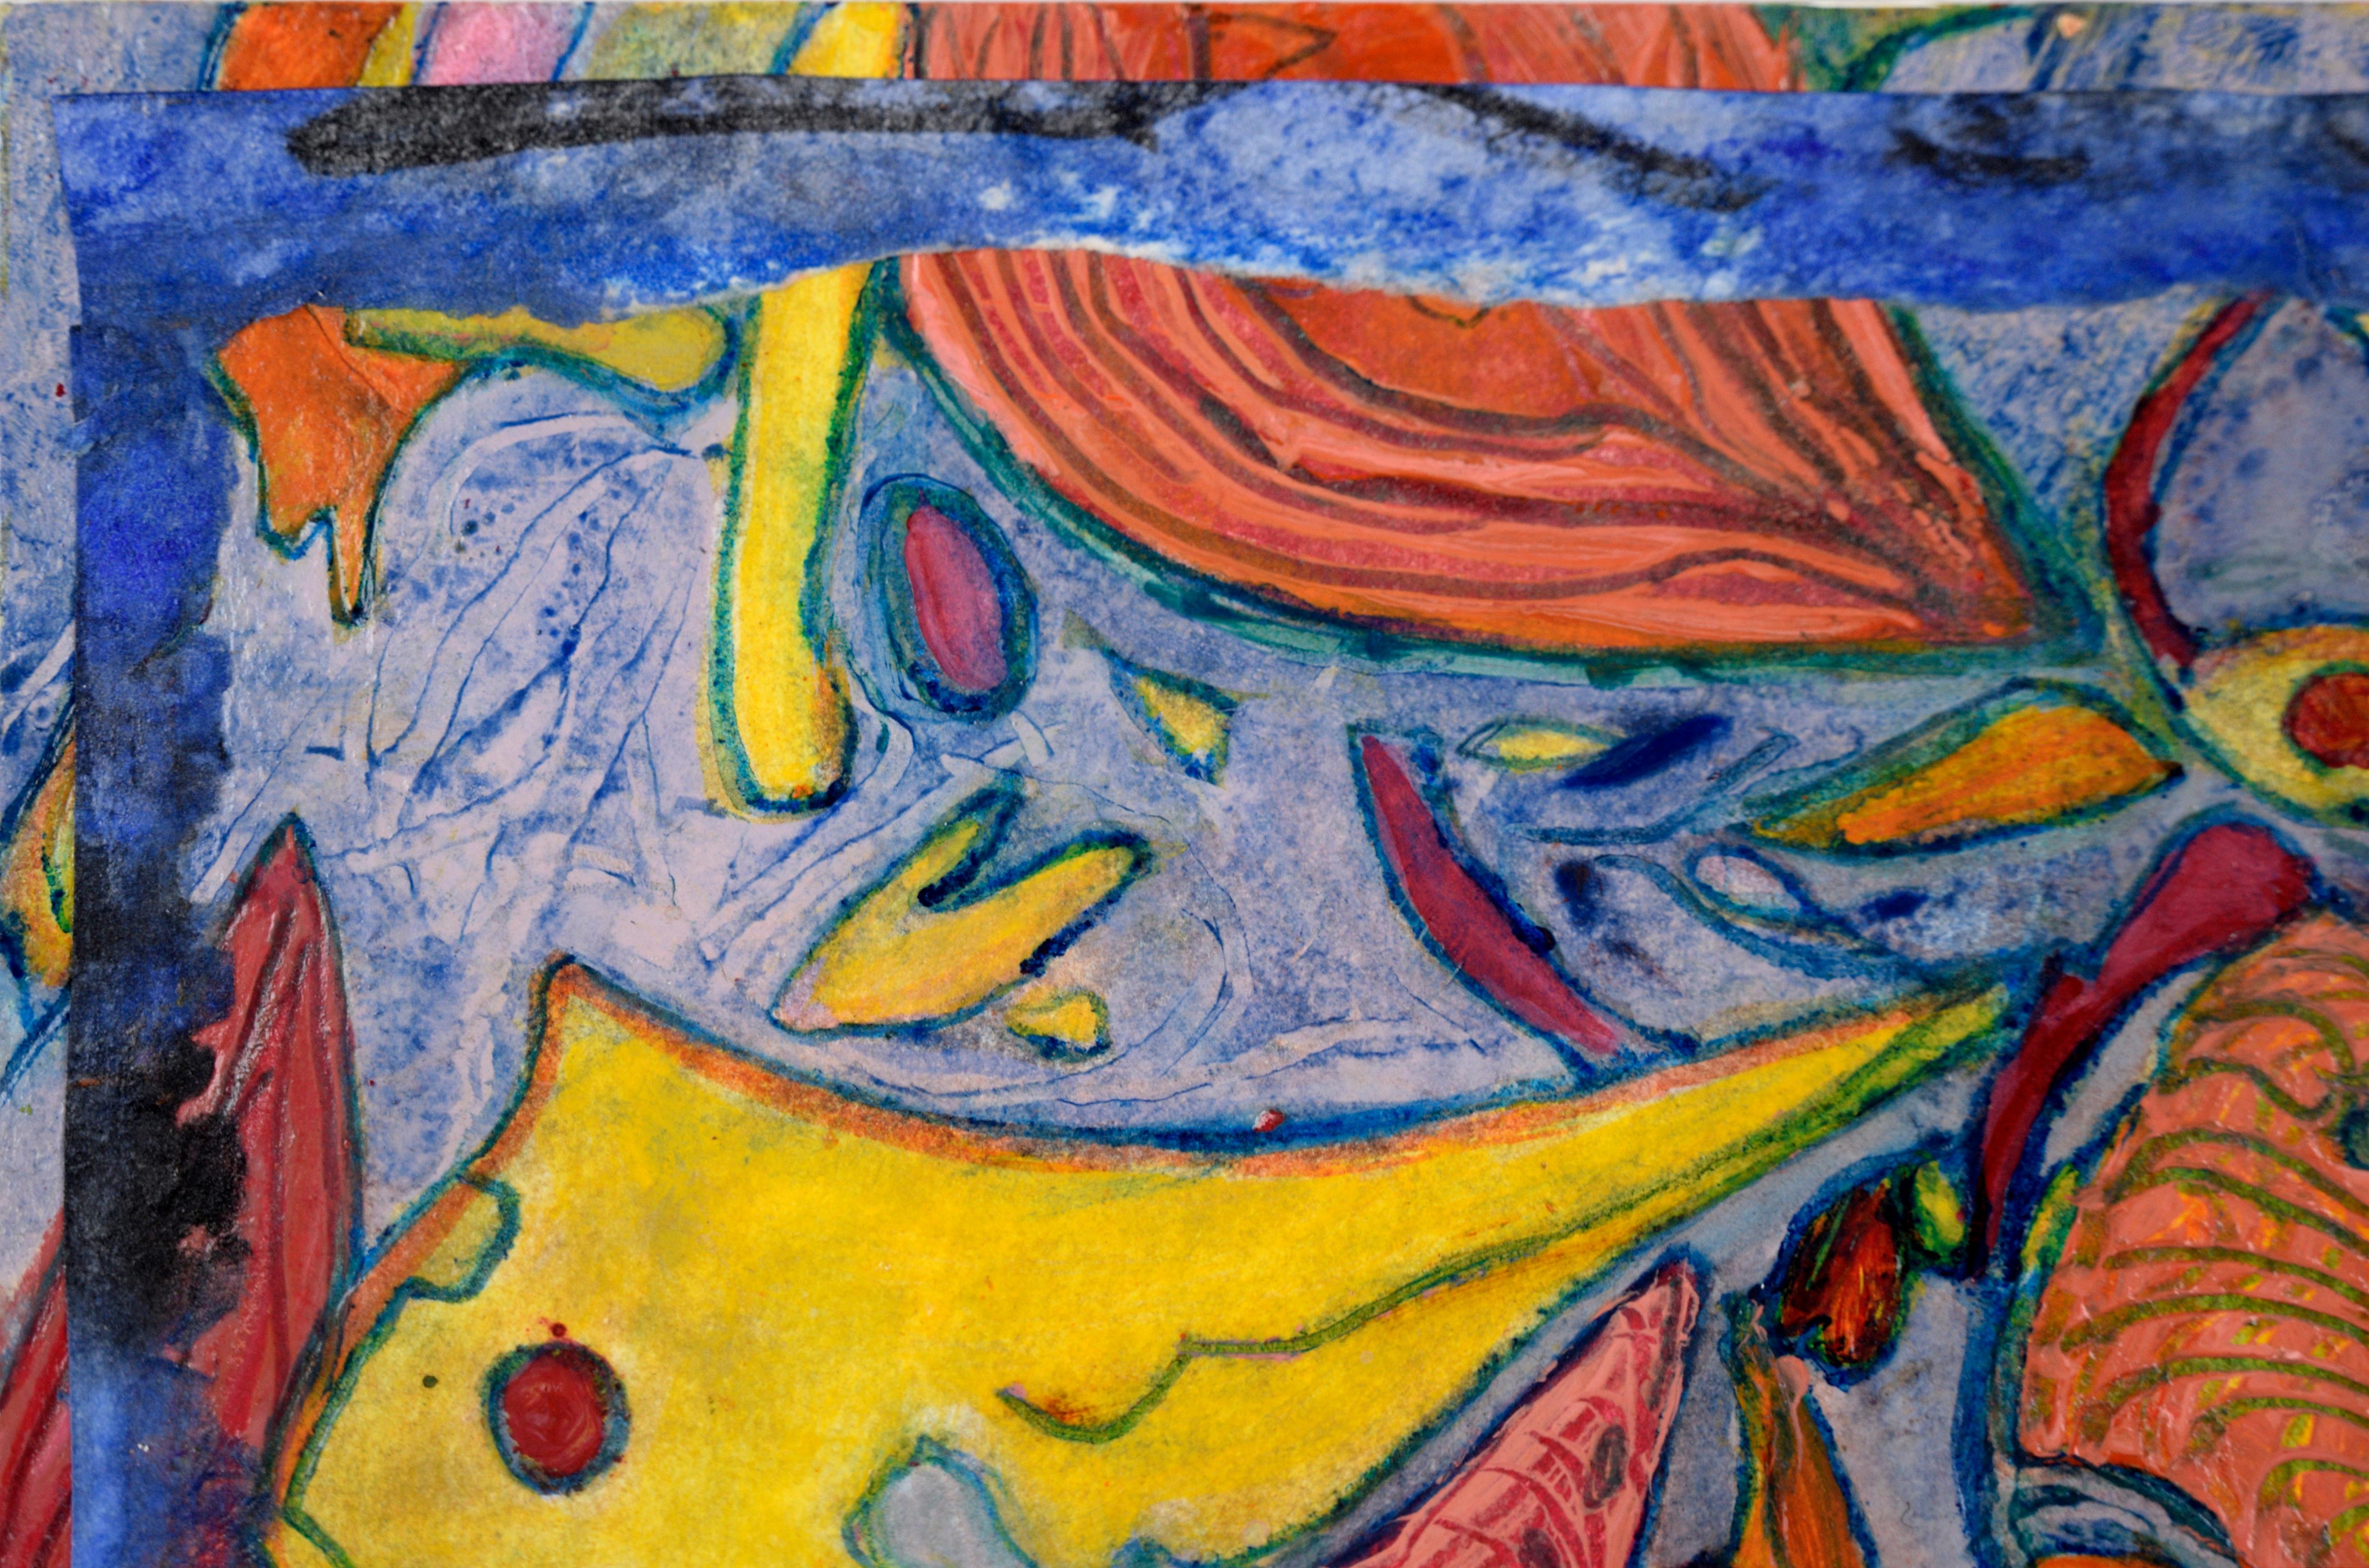 Carnival Abstract in Blau, Orange und Gelb - Öl und Collage auf Papier

Helles und farbenfrohes abstraktes Bild von Jennie T. Rafton (Amerikanerin, geb. 1925). Die Formen sind über die Seite verstreut und deuten auf Bewegung und Bewegung hin. An